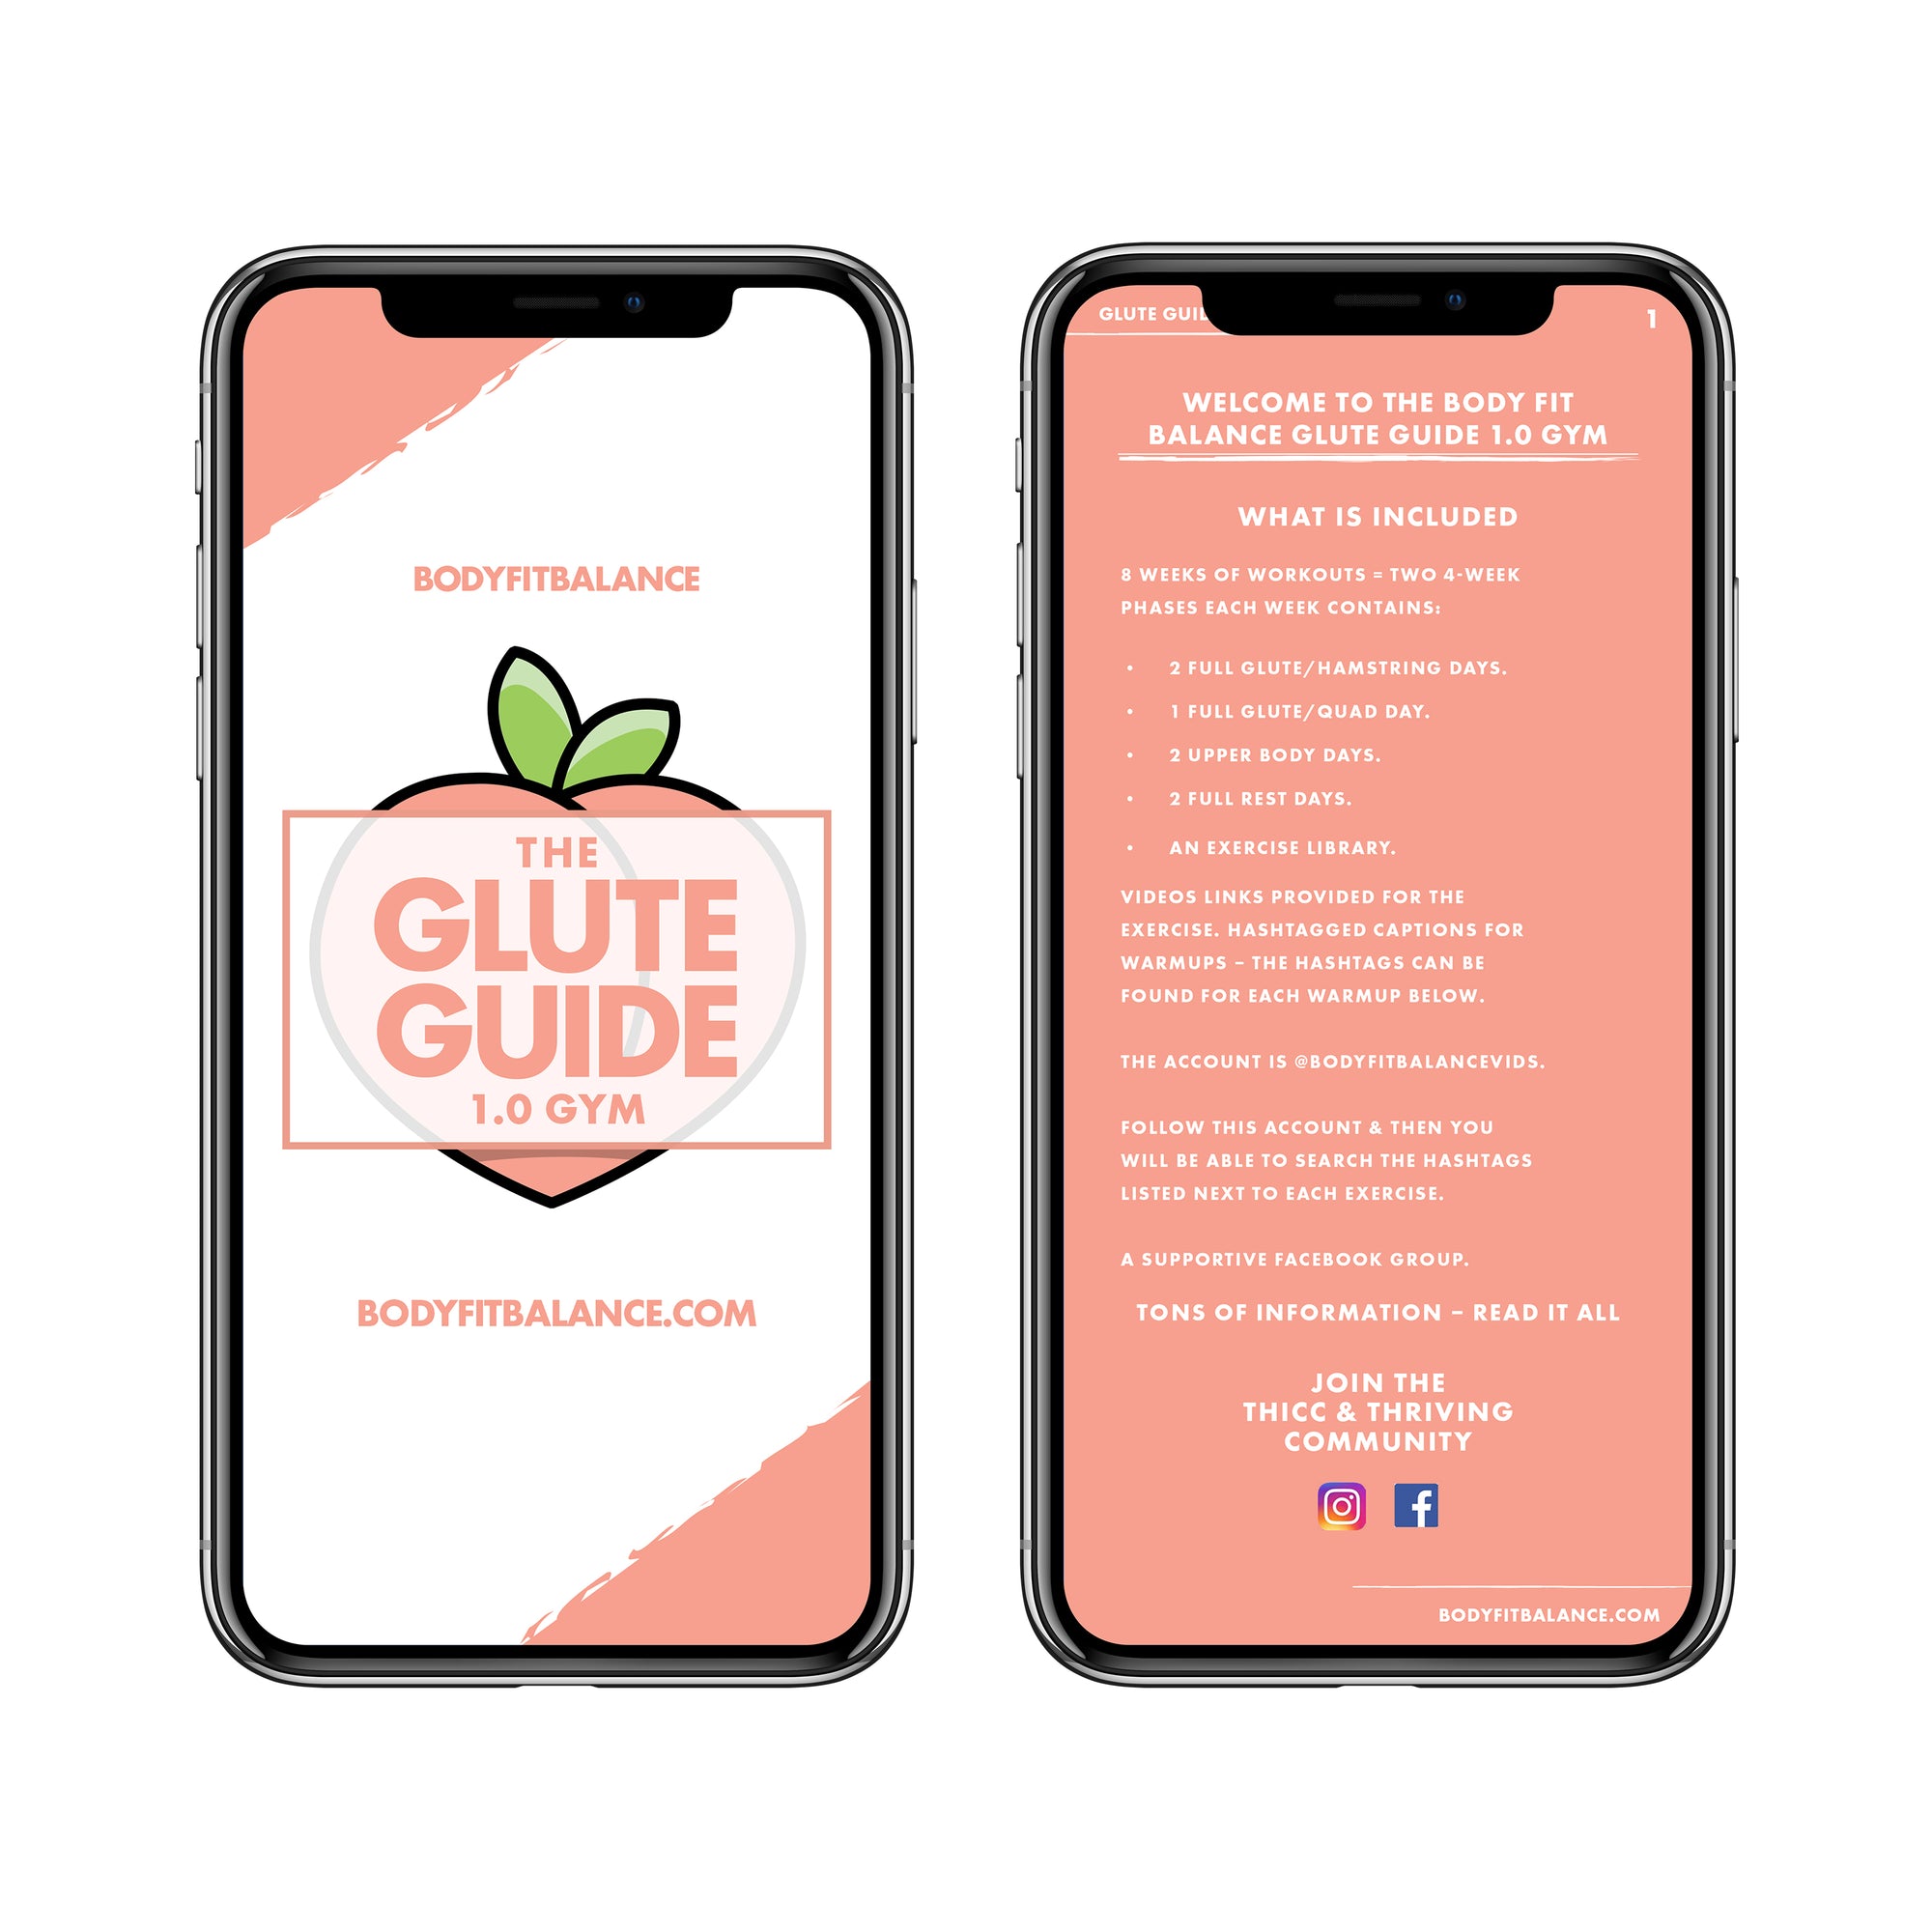 8 Week Glute Guide 1 0